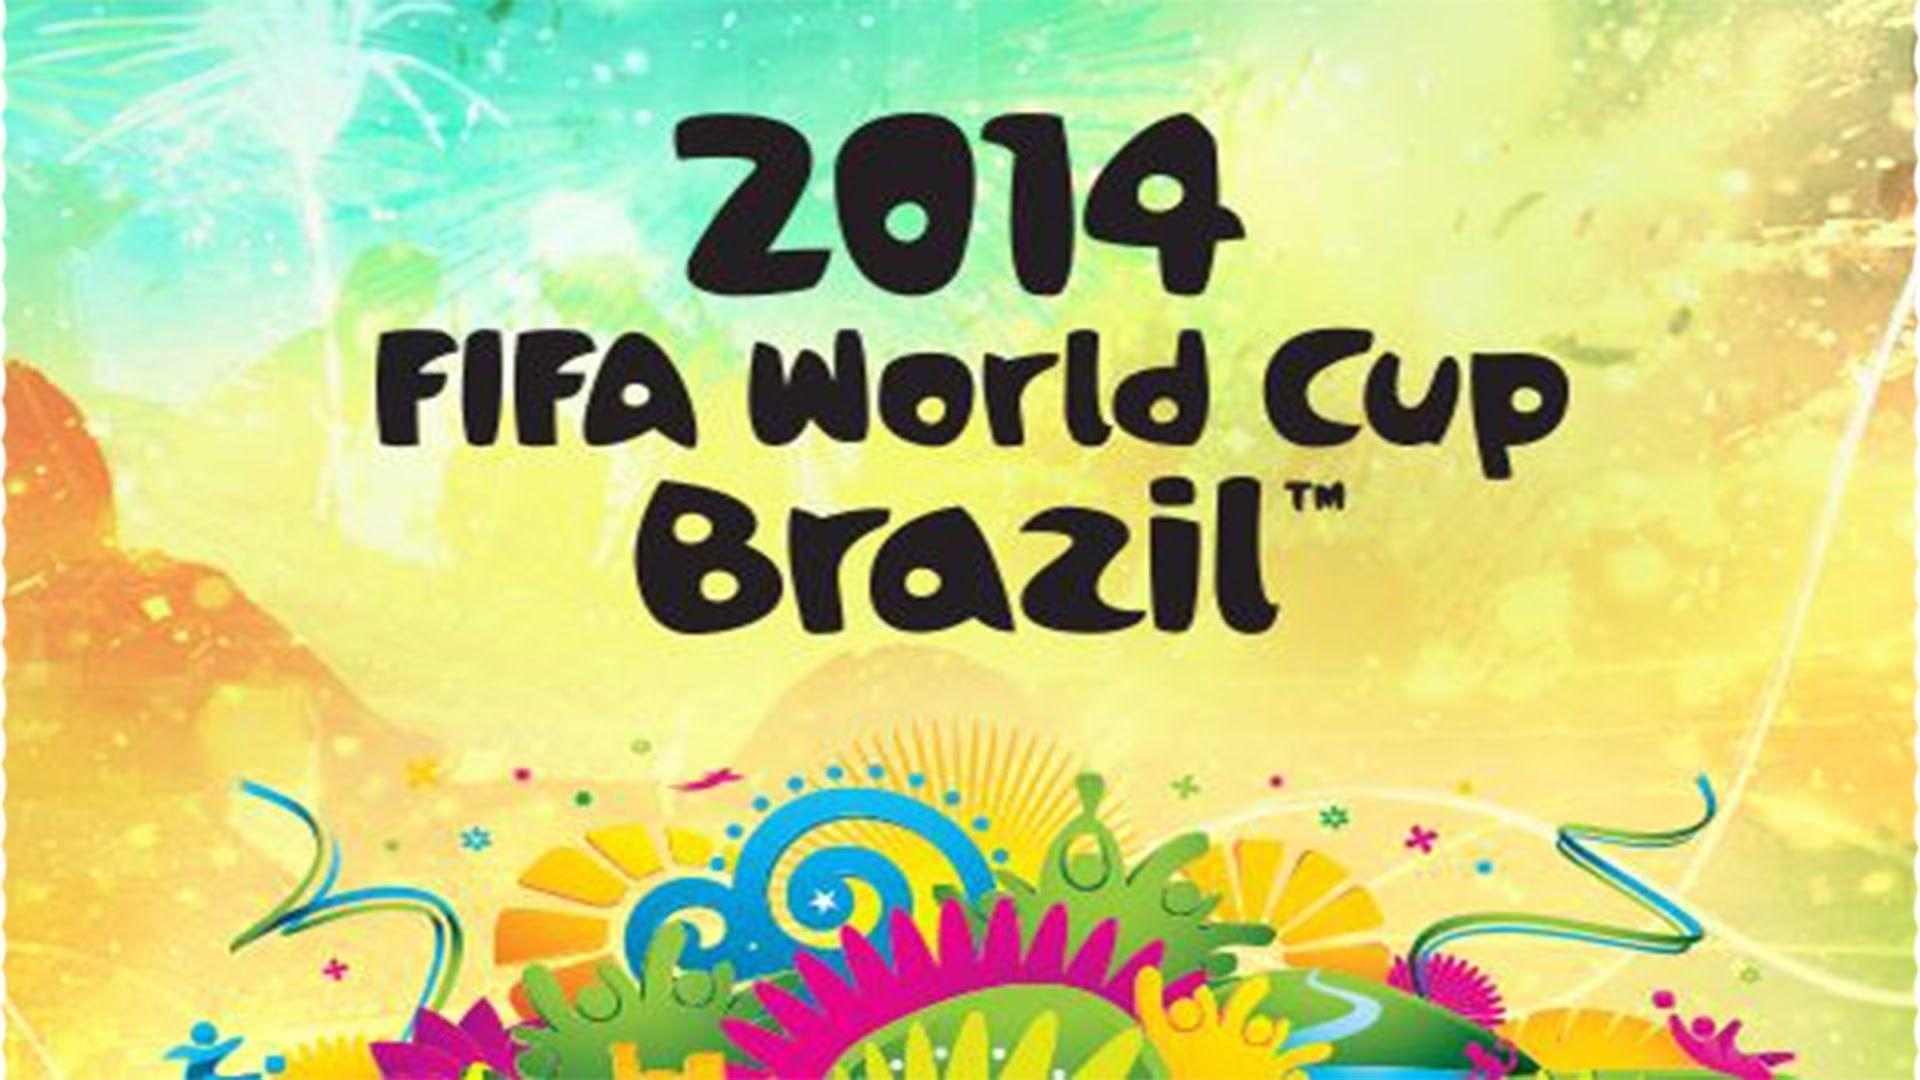 FIFA World Cup 2014 Brazil Desktop Background Wallpaper